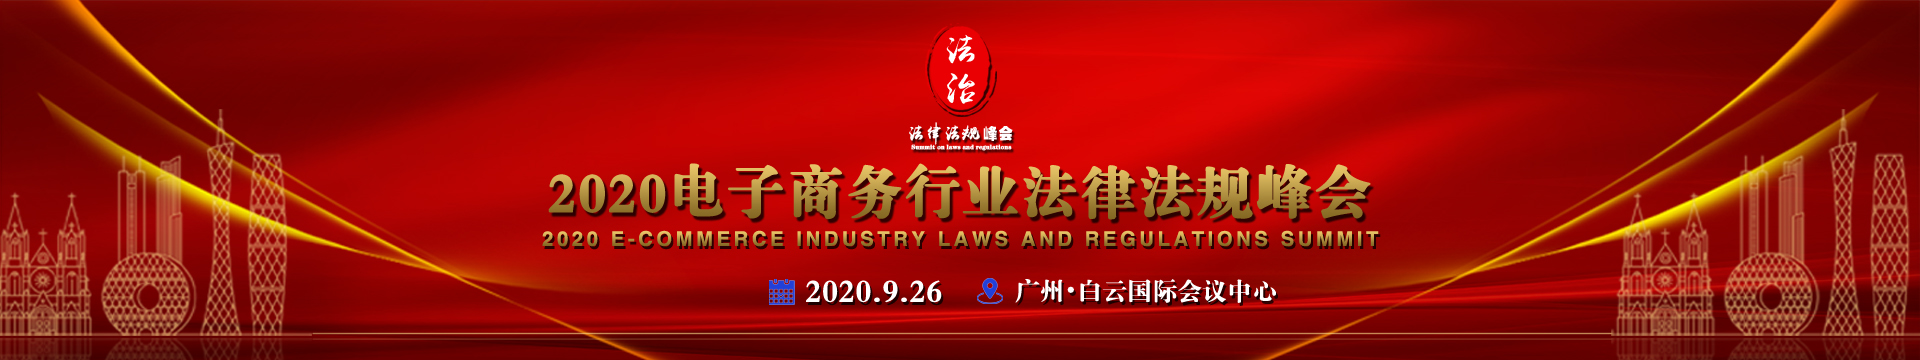 2020电子商务行业法律法规峰会